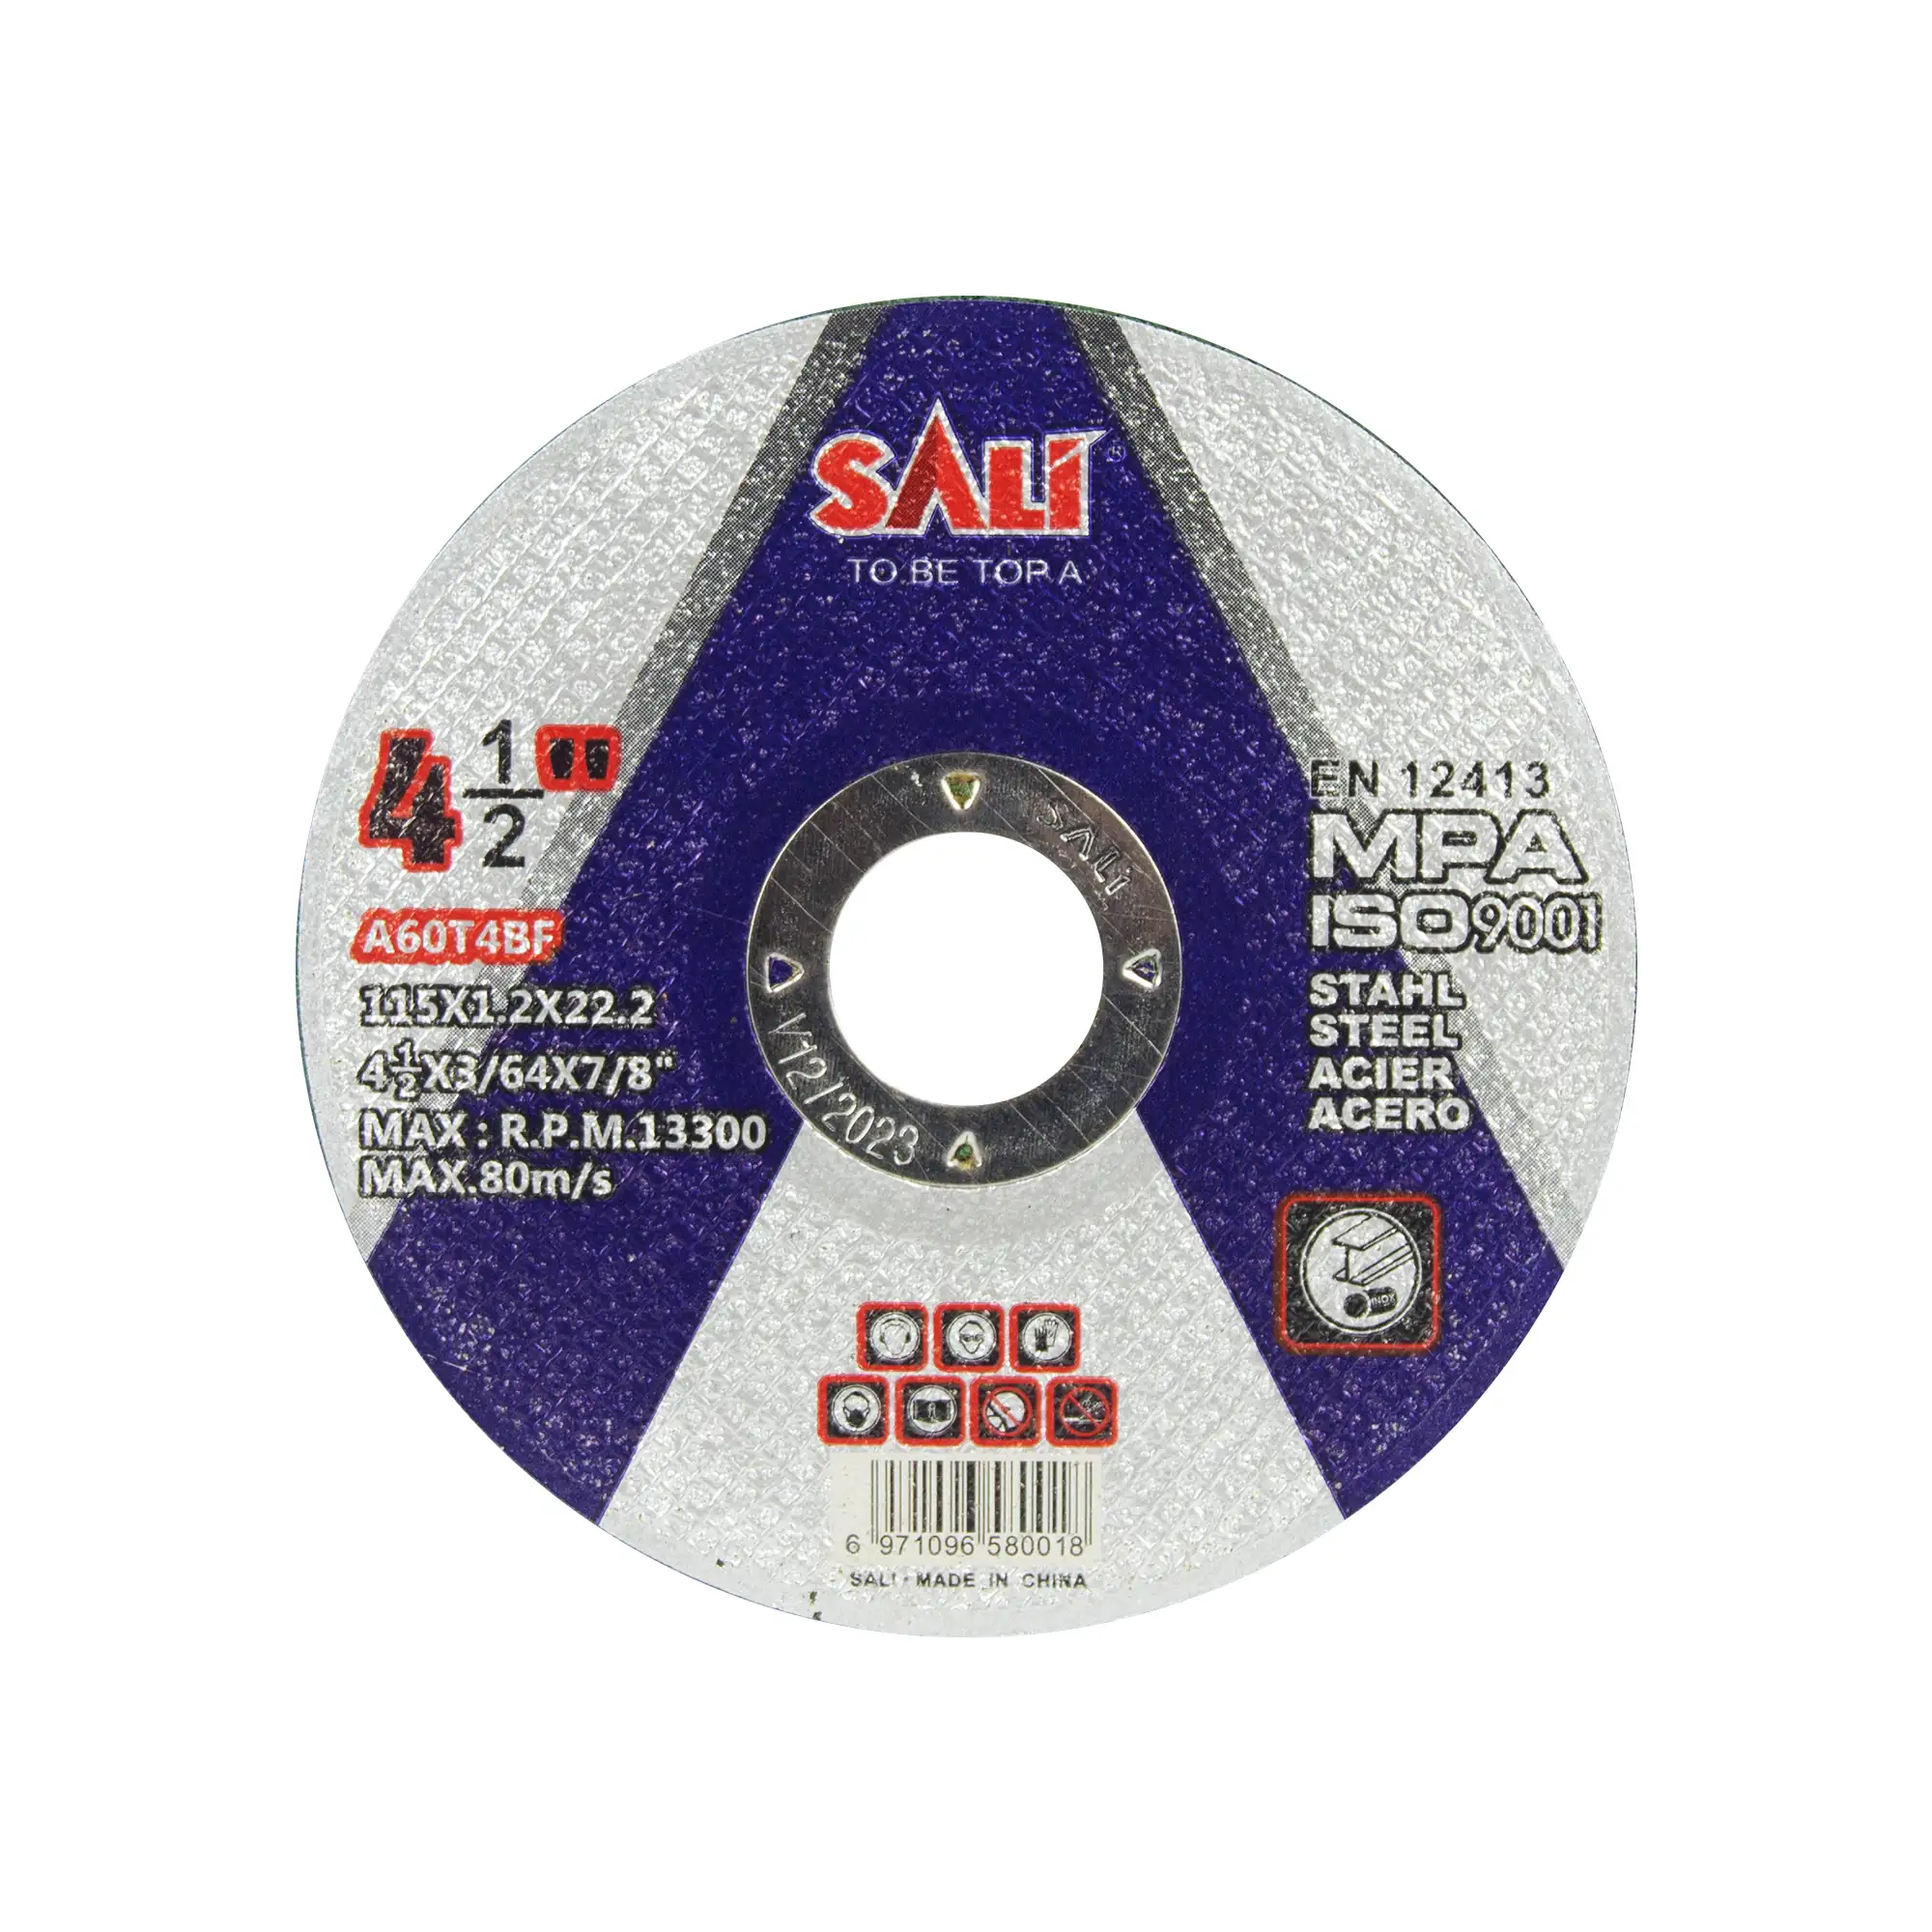 SALI 115x1.2x22.2mm La norme internationale 4.5 pouces disco de corte Métal Disque de Coupe pour angle grinder outils abrasifs